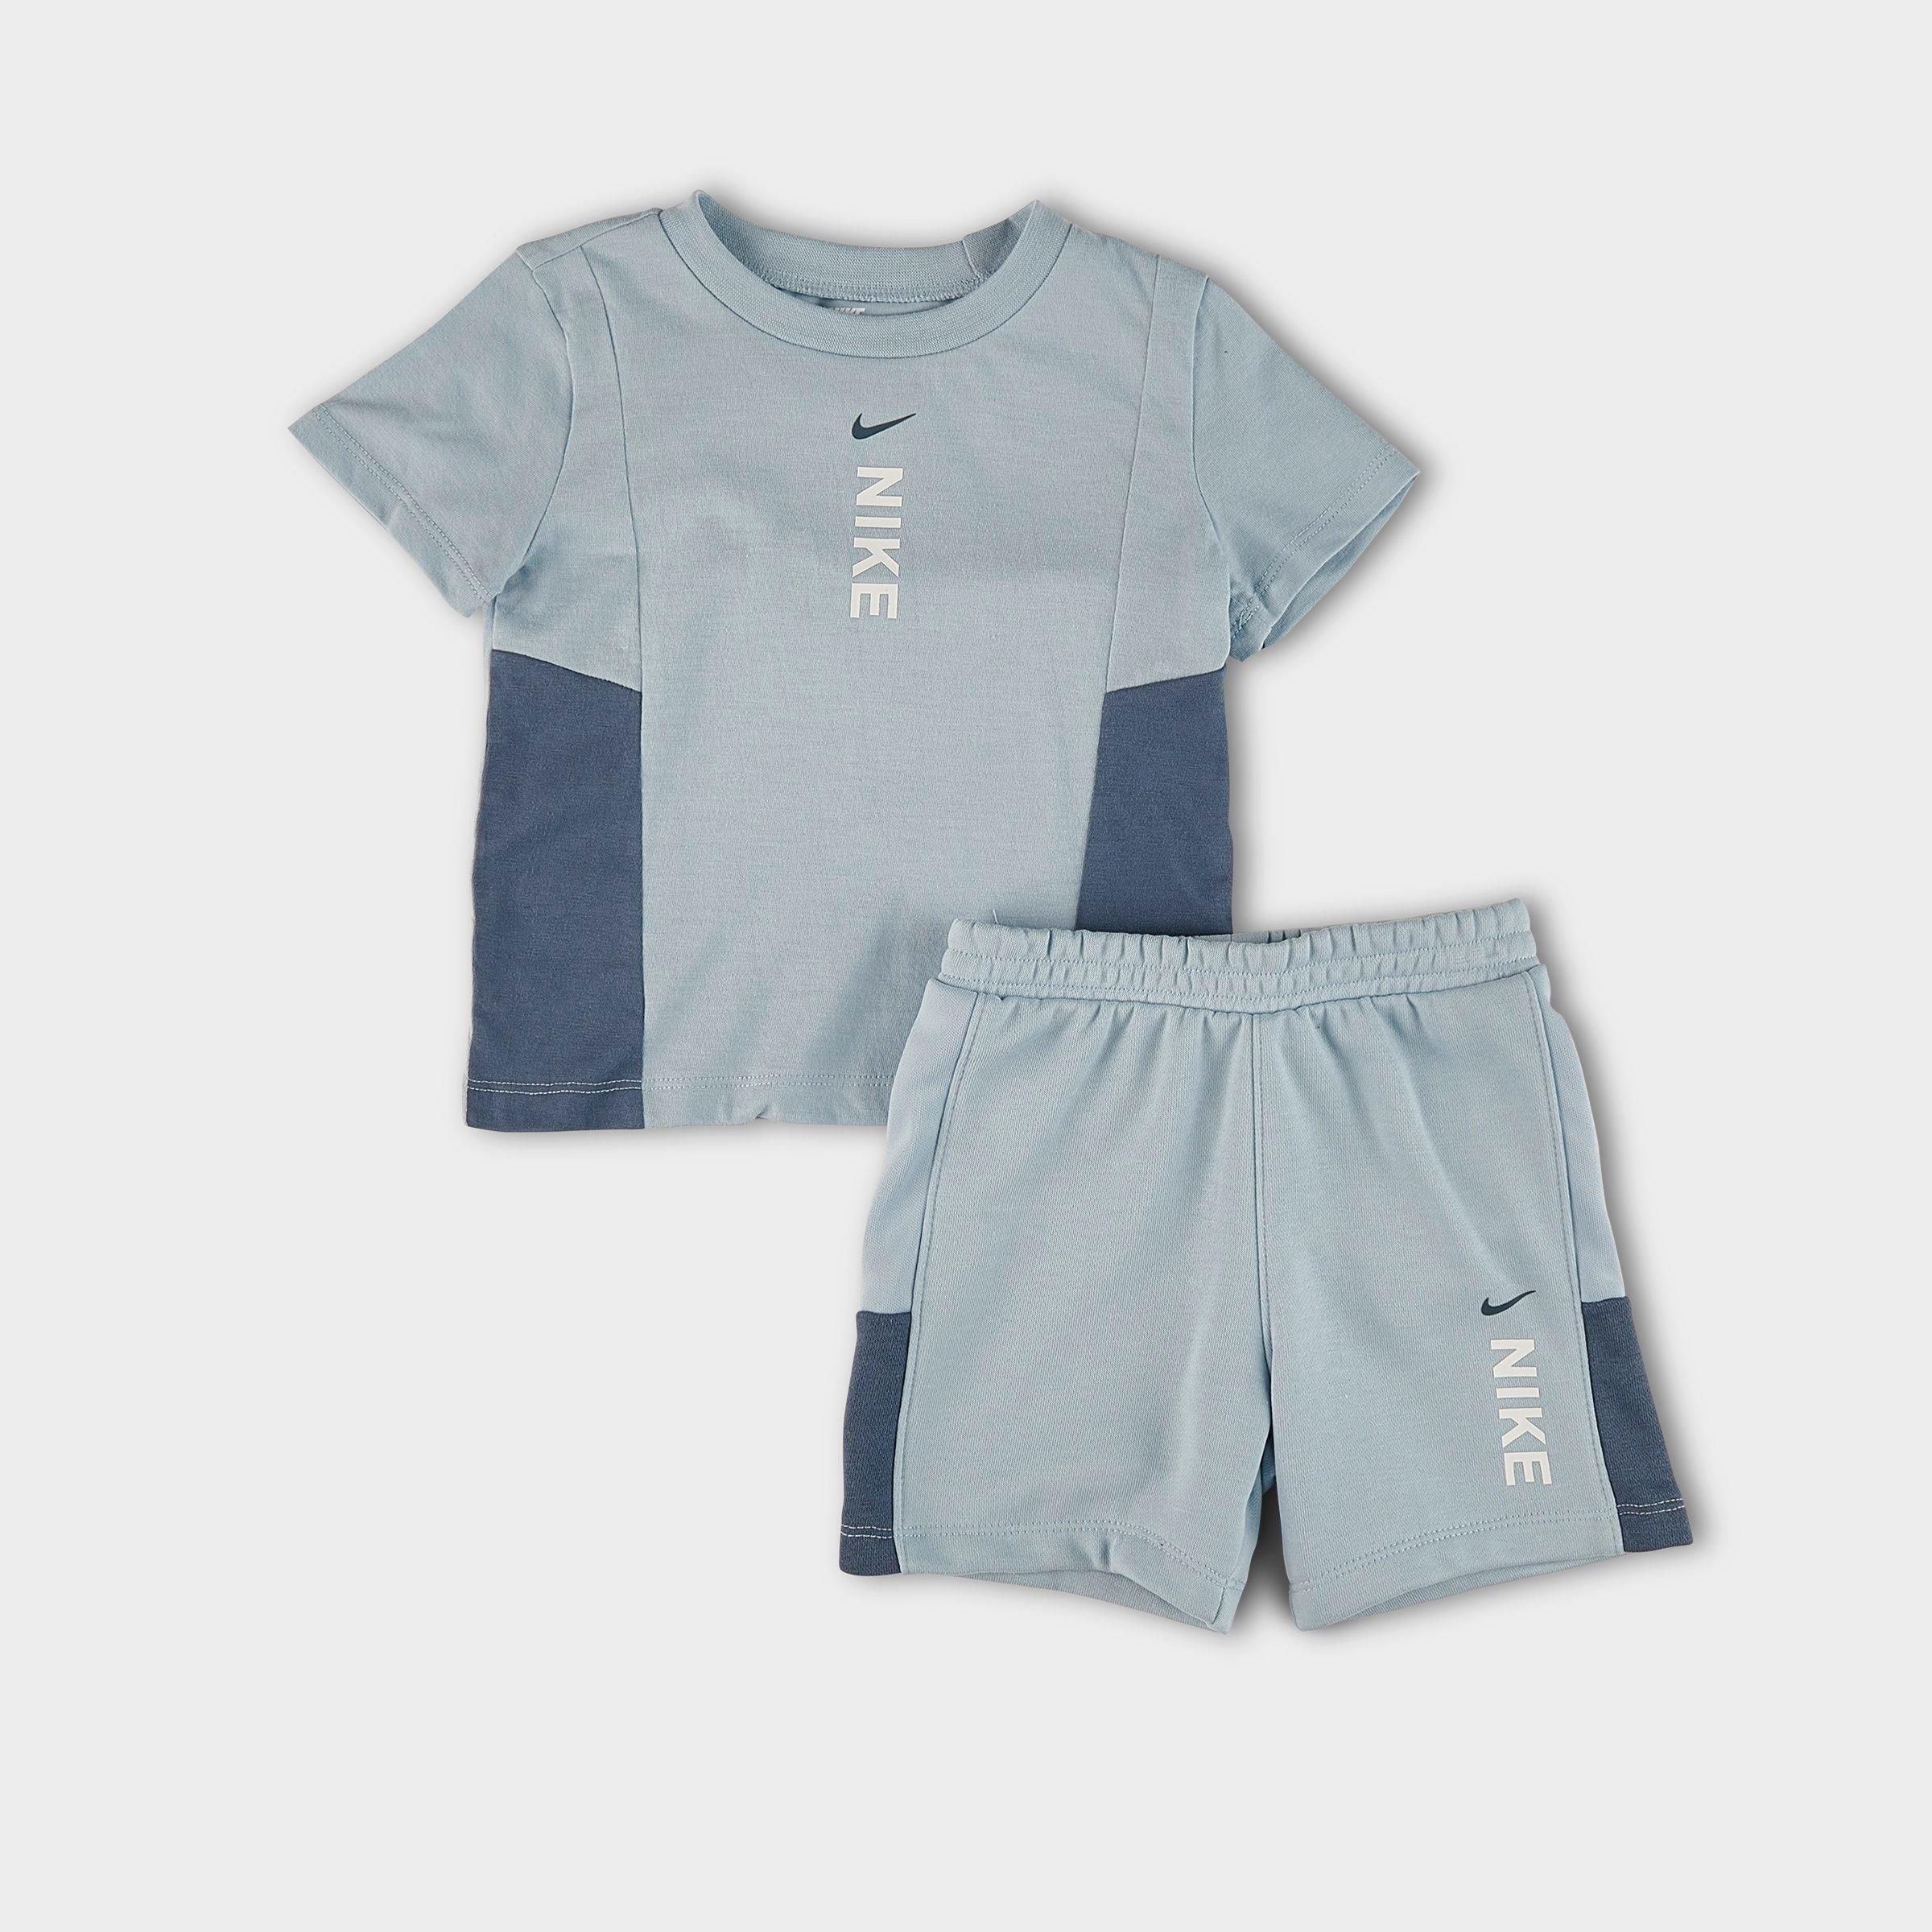 Infant Nike Hybrid T-Shirt And Shorts Set